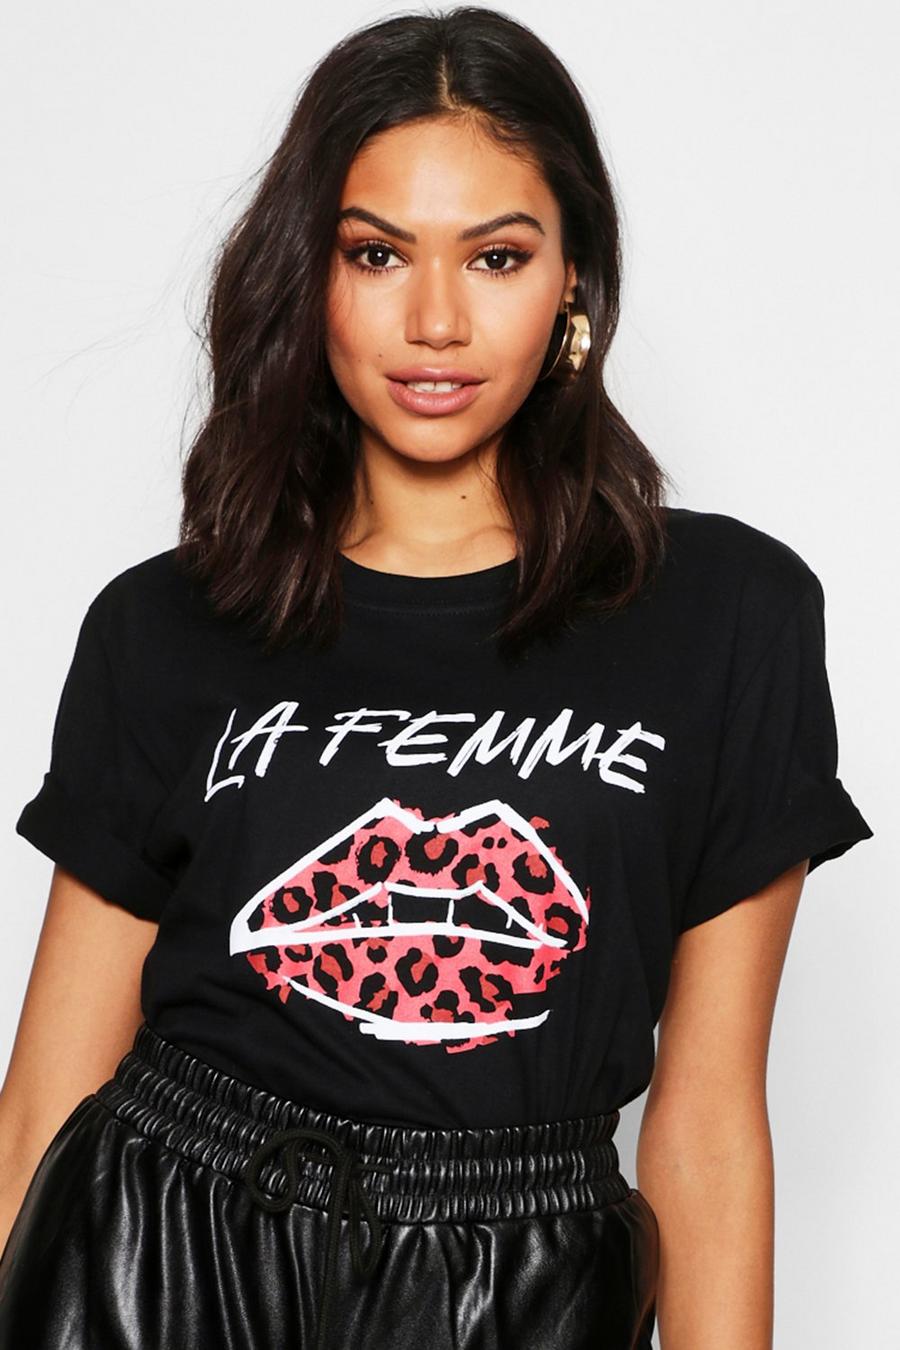 Tshirt Hey Ladies Fitted Tshirt,Leopard Print Slogan Womens T Shirt